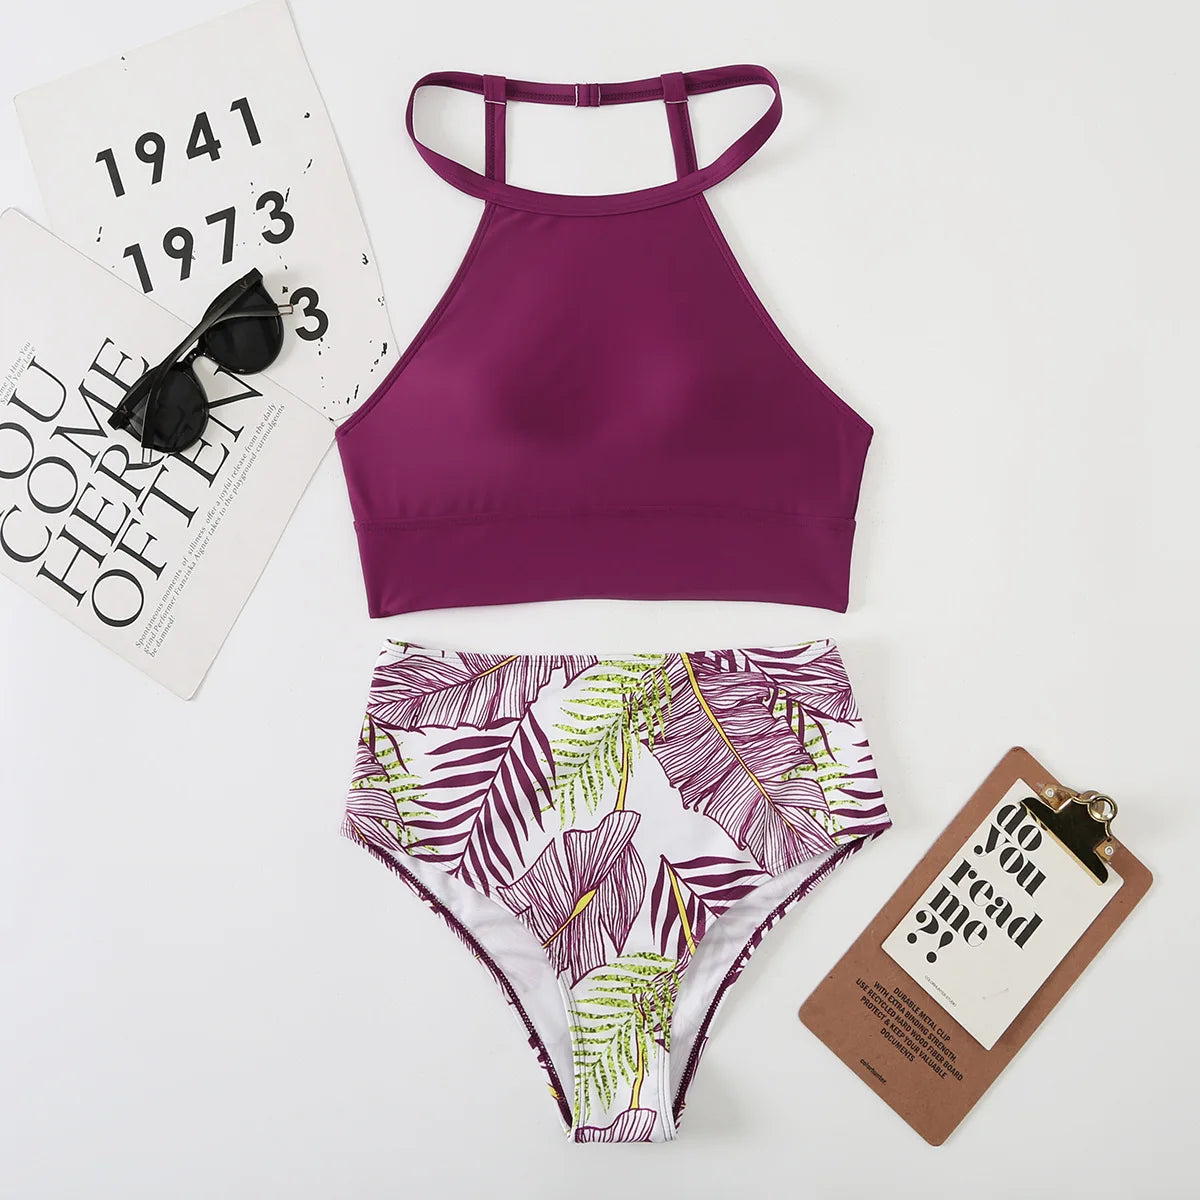 Light Purple High Waist Bikini High Neck Swimsuit Female Two Piece Swimwear Women Print Beach Wear Bathing Suit